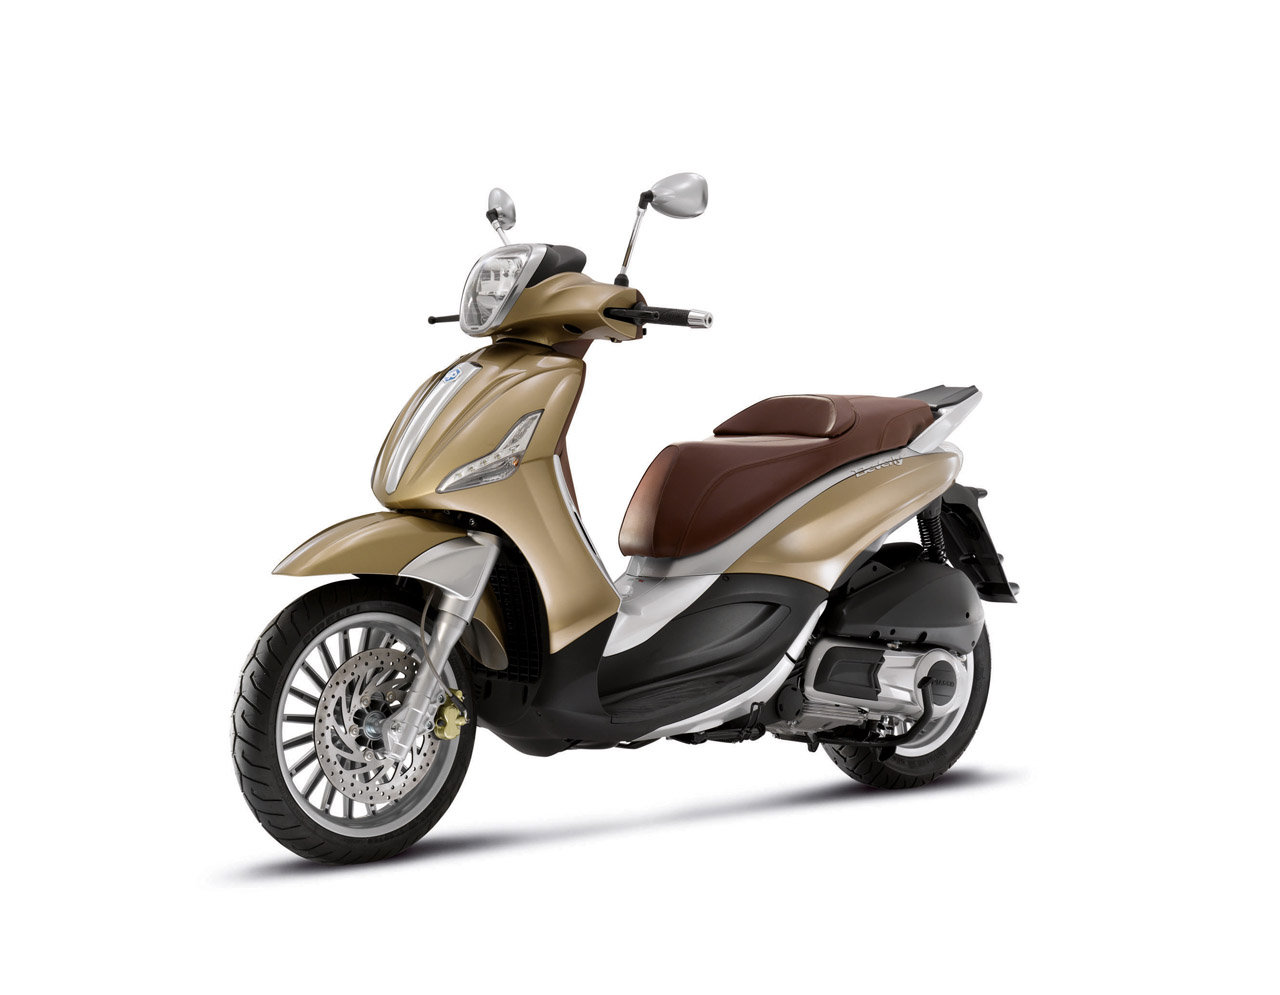 Listino Piaggio X 10 Executive 500 Scooter oltre 300 - image 15053_piaggio-beverly125-ie on https://moto.motori.net